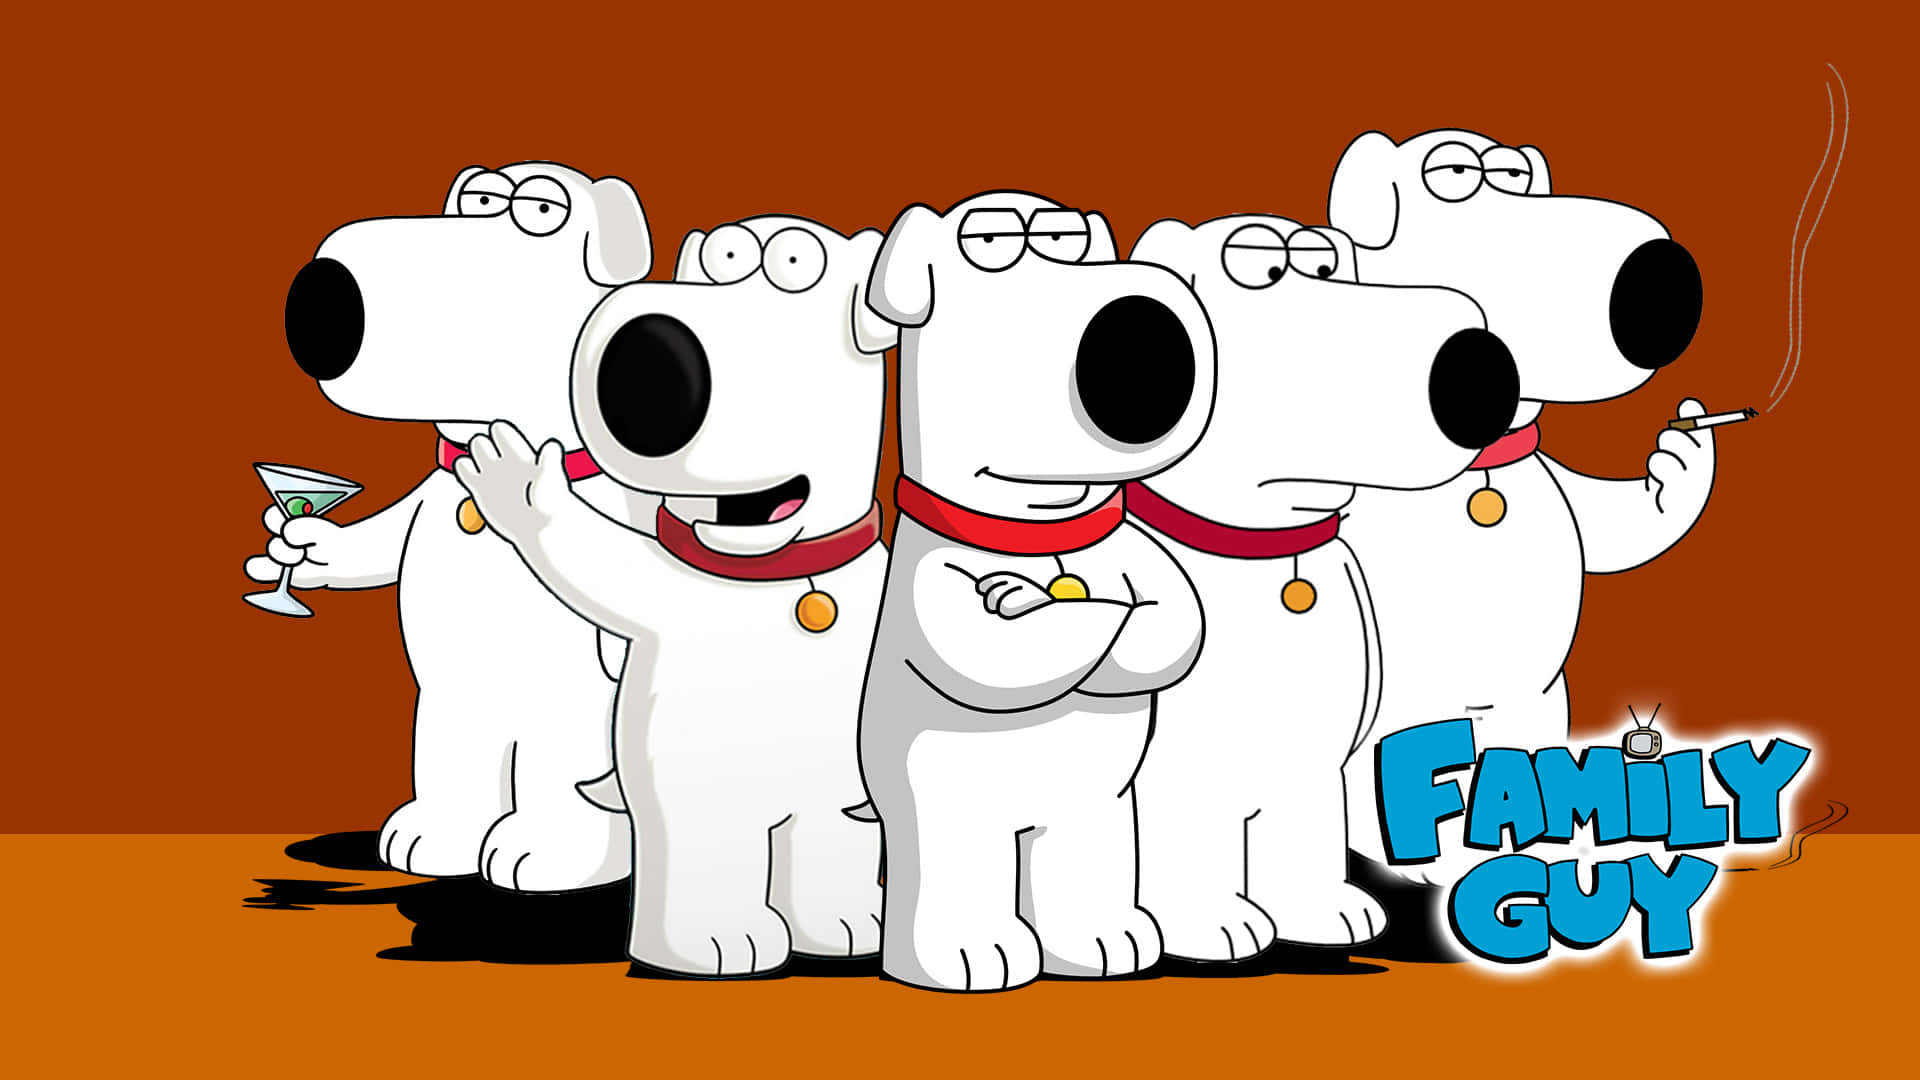 Elpersonaje De Family Guy Posa De Manera Humorística Junto A Un Cartel Publicitario.